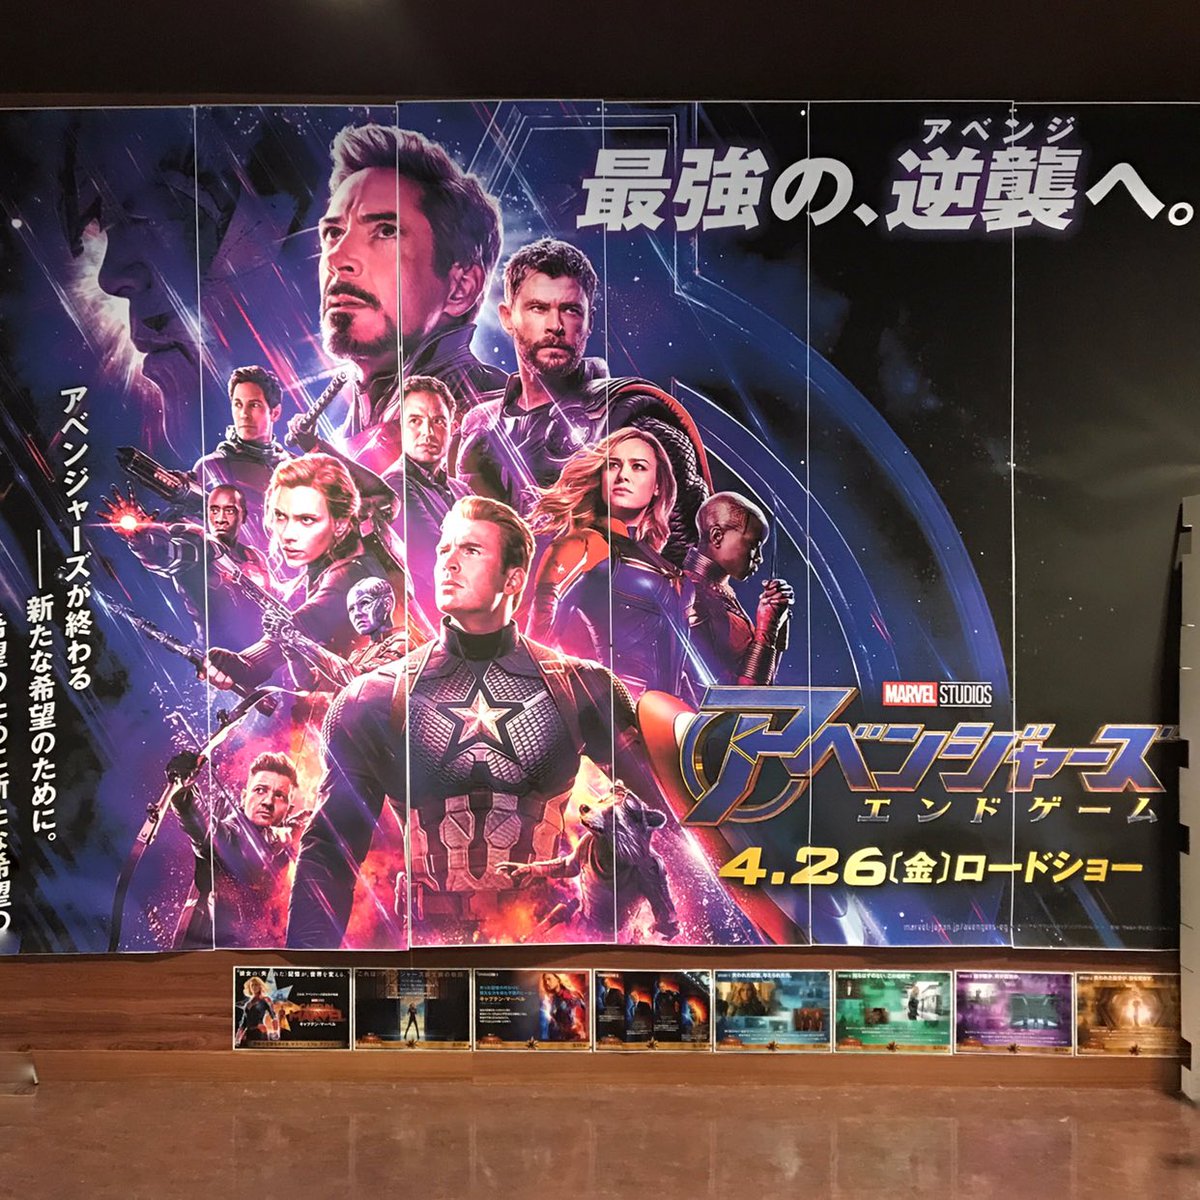 ট ইট র 山本博昭 Hiroaki Yamamoto 一人映画してきました 贅沢な時間 アベンジャーズエンドゲーム アベンジャーズ マーベル フジグラン神辺 福山市 映画 Imax3d Imax Avengersendgame Avengers Marvel Iloveyou3000 Movie Fujigrand